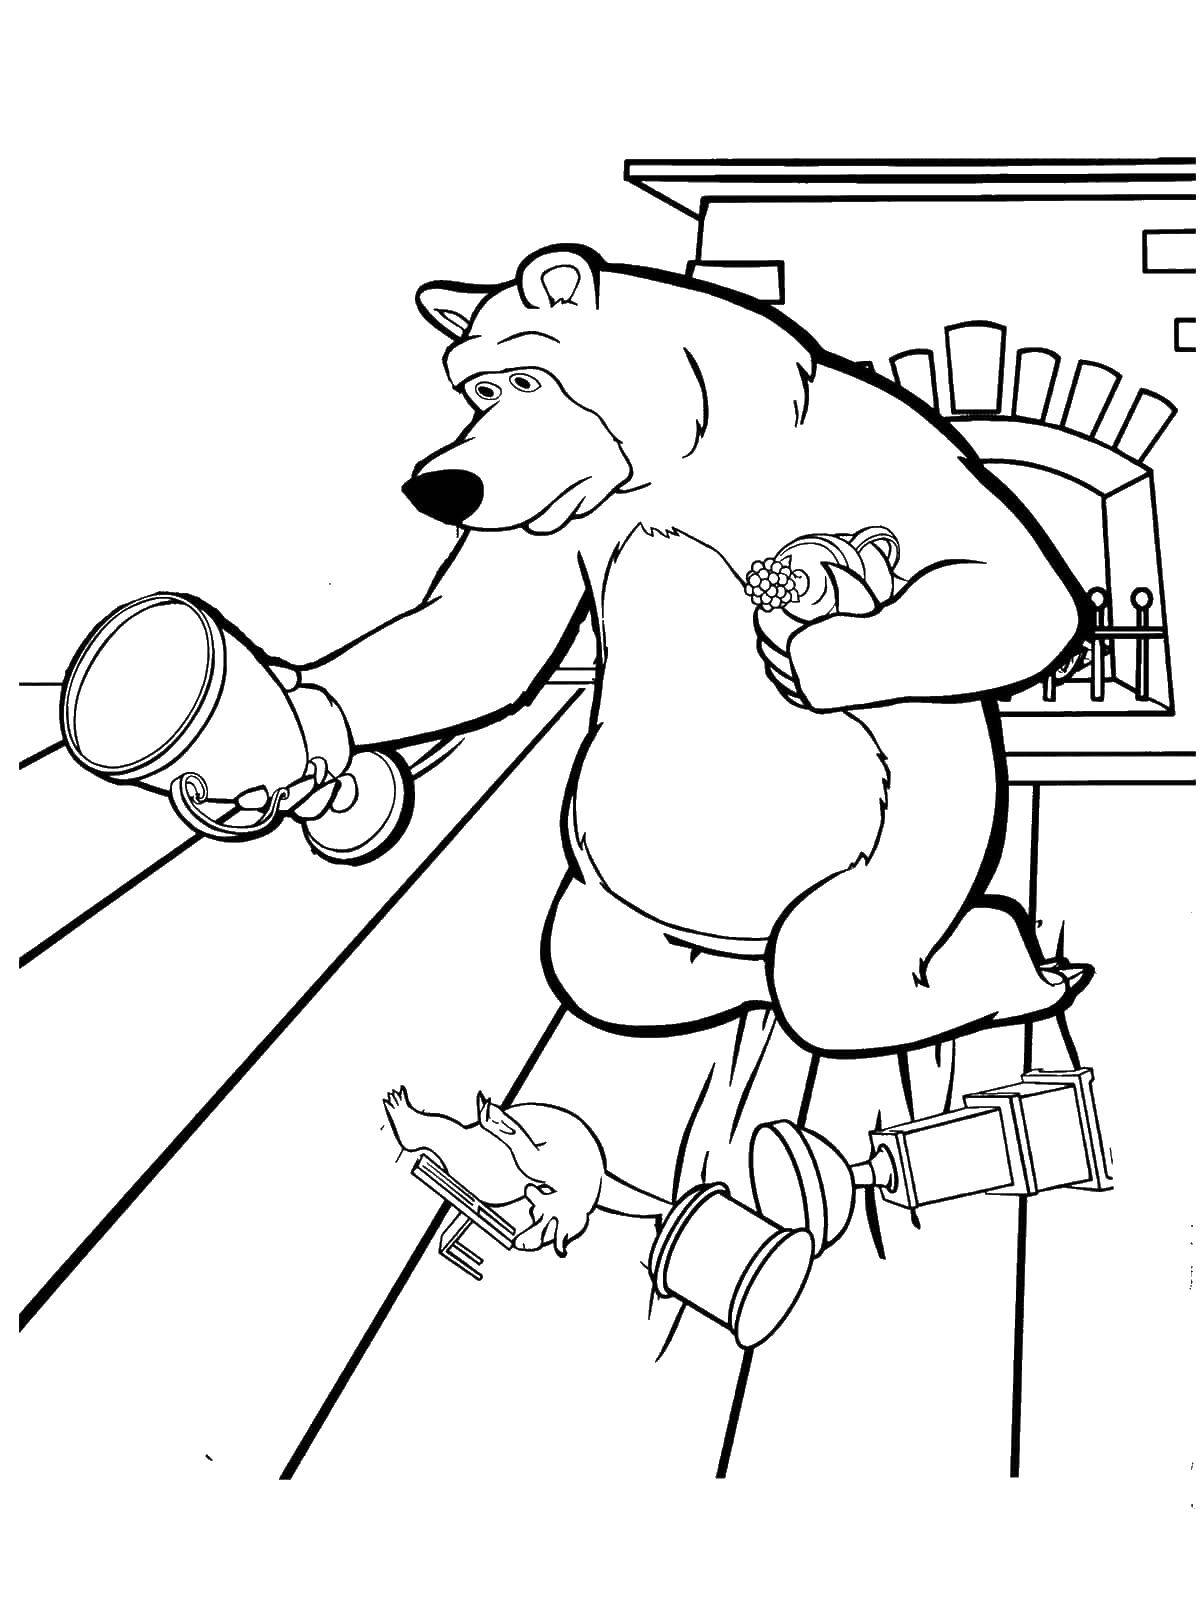 Раскраски для детей про озорную Машу из мультфильма Маша и медведь  Миша собирает кубки